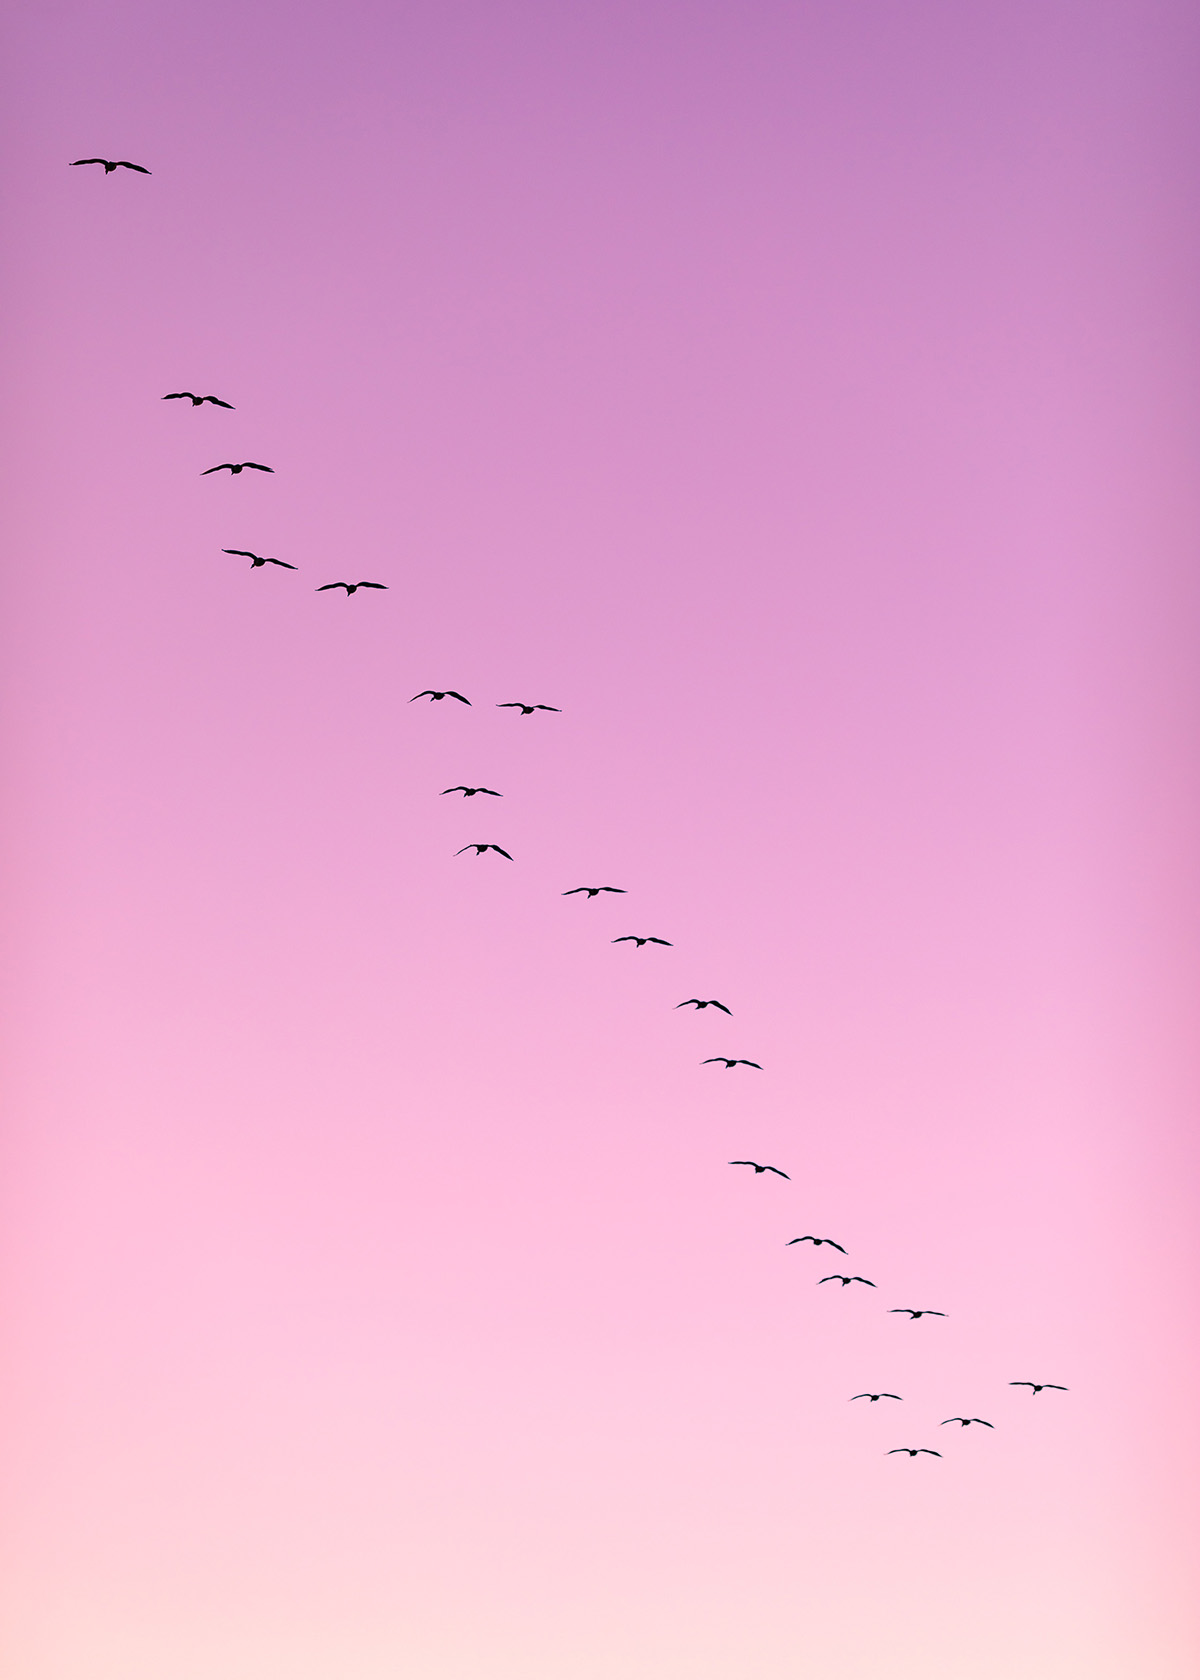 birds in flight in a pink sky